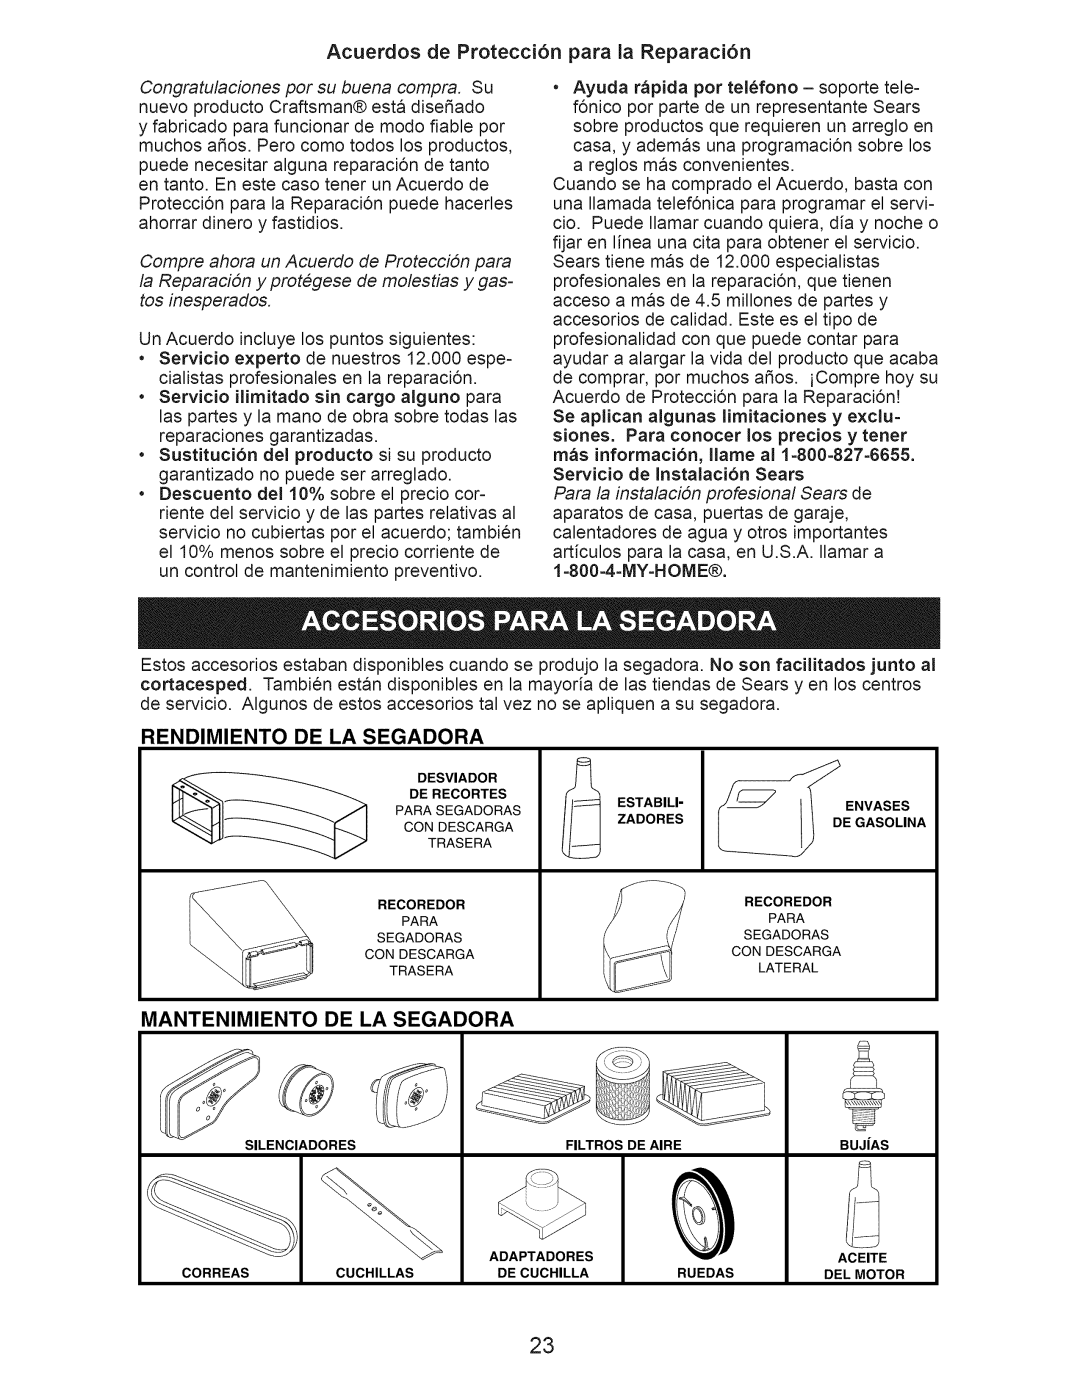 Craftsman 917.376230 Acuerdos de Protecci6n para la Reparaci6n, Rendimiento De La Segadora, Mantenimiento De La Segadora 